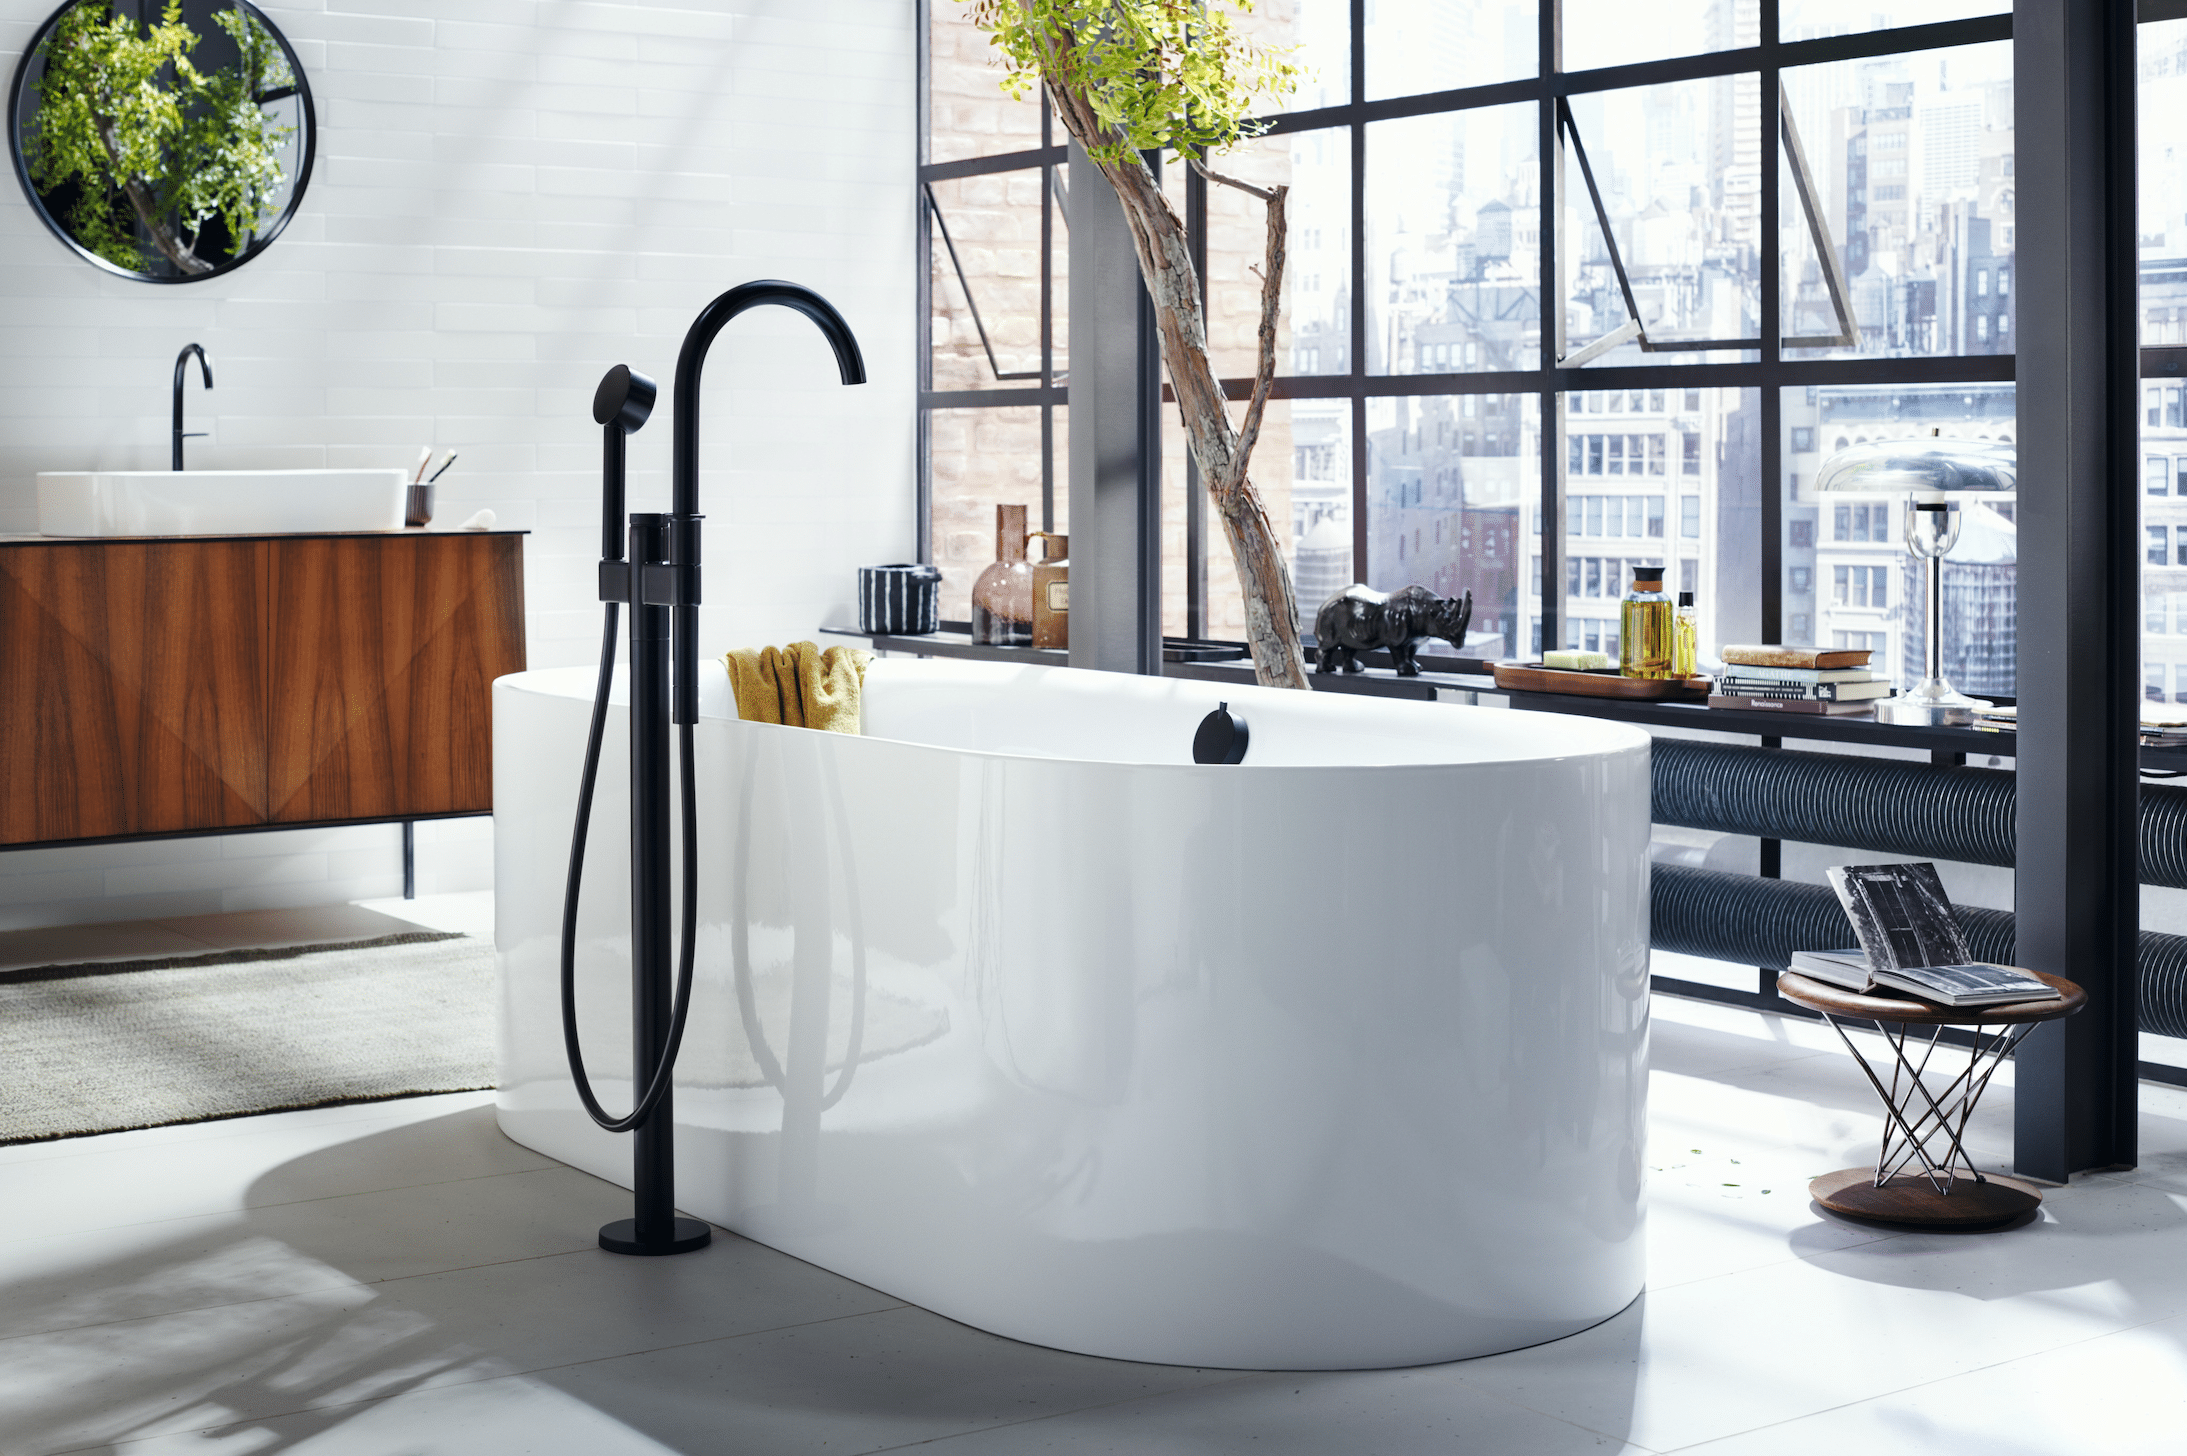 Hansgrohe präsentiert eine ovale, weisse Badewanne mit schwarzer Armatur in einem durch die großen Fensterflächen sehr hellen Badezimmer.